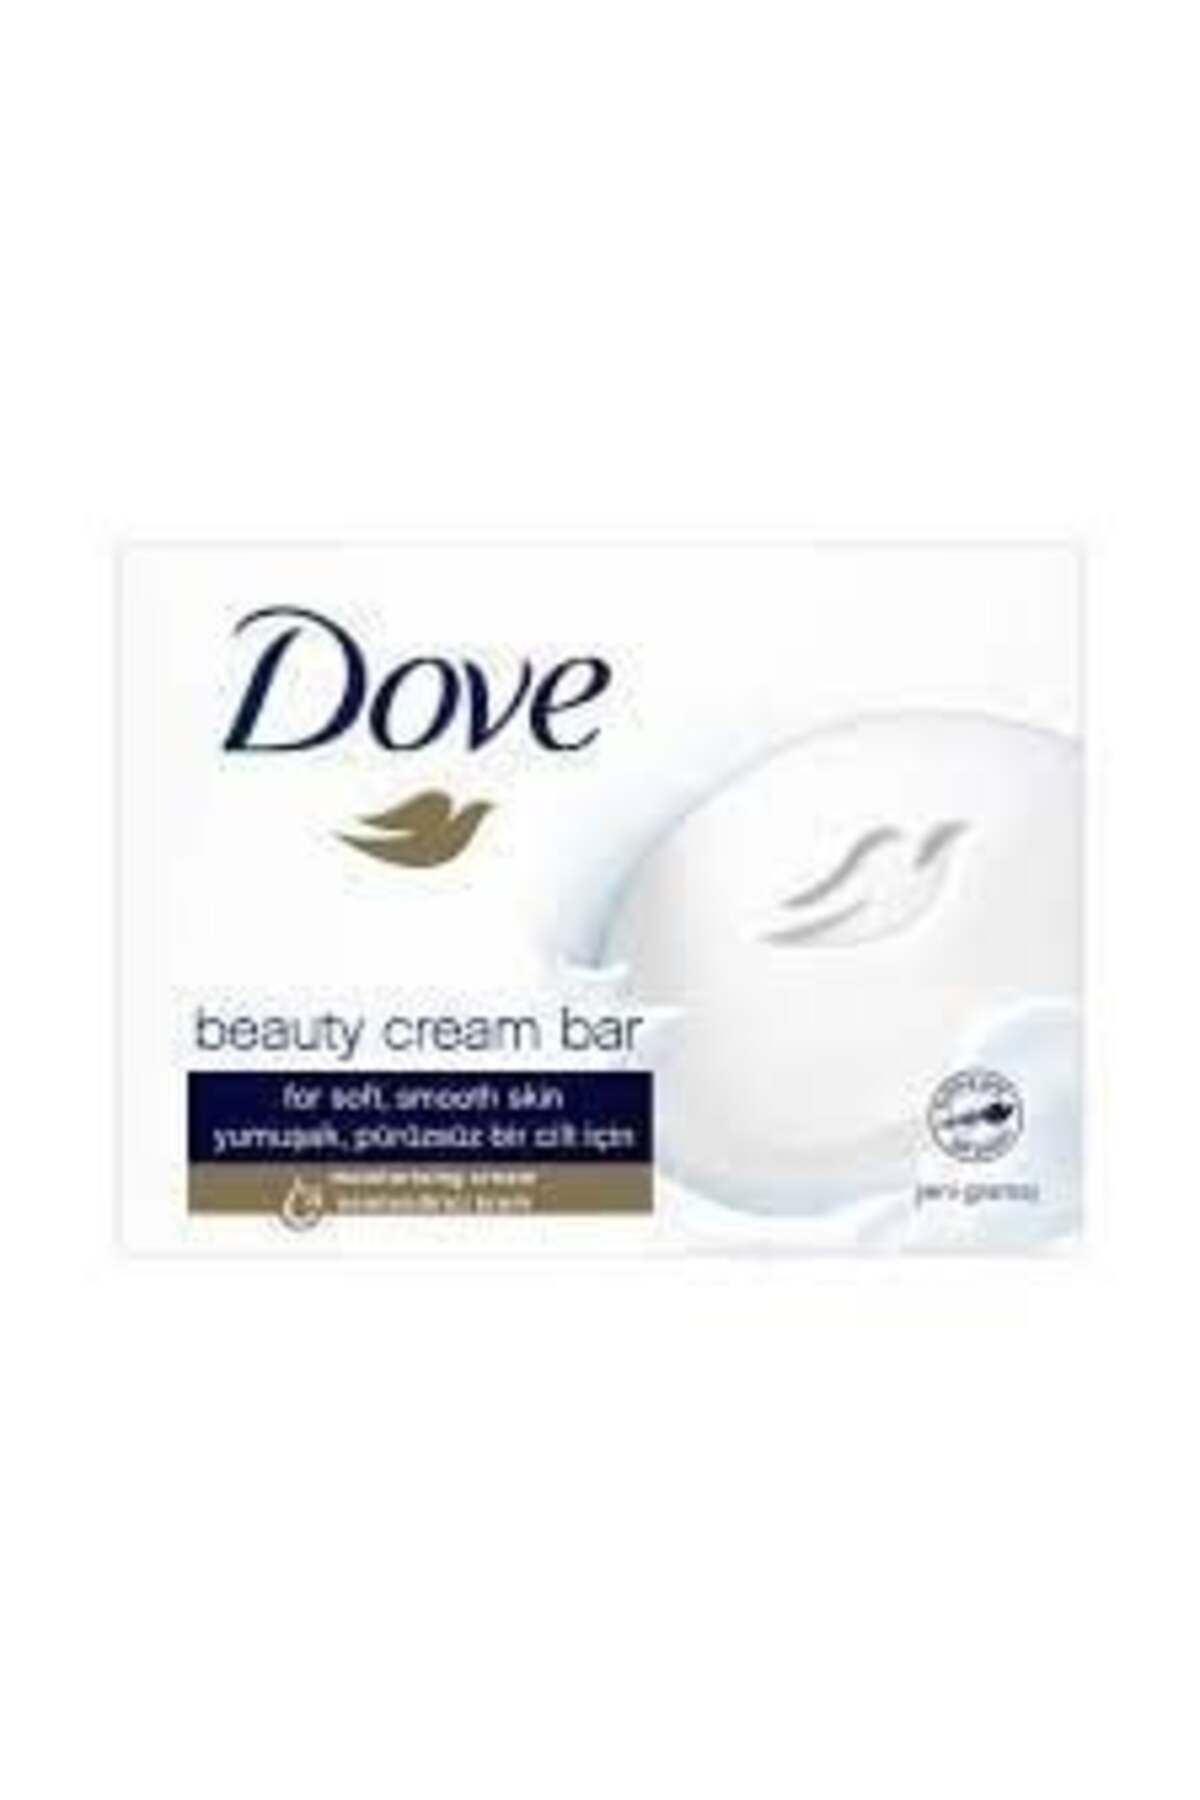 Dove Beauty Cream Bar Original Yumuşak Pürüzsüz Bir Cilt Için Nemlendirici Krem 90 G 2 Adet Fiyatıdır.